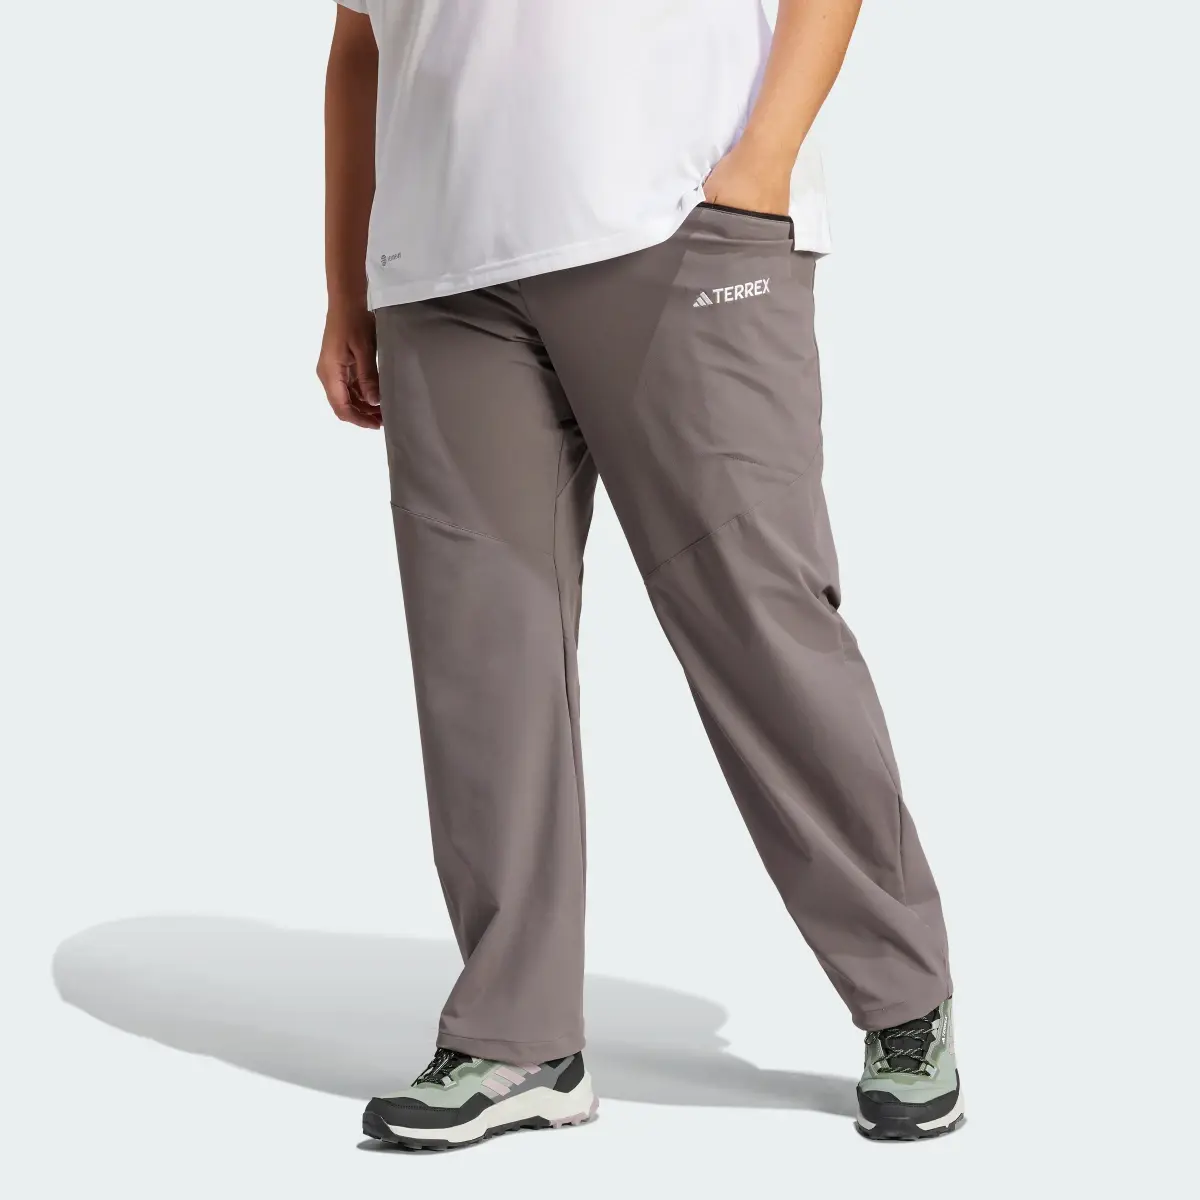 Adidas Terrex Xperior Trousers (Plus Size). 1